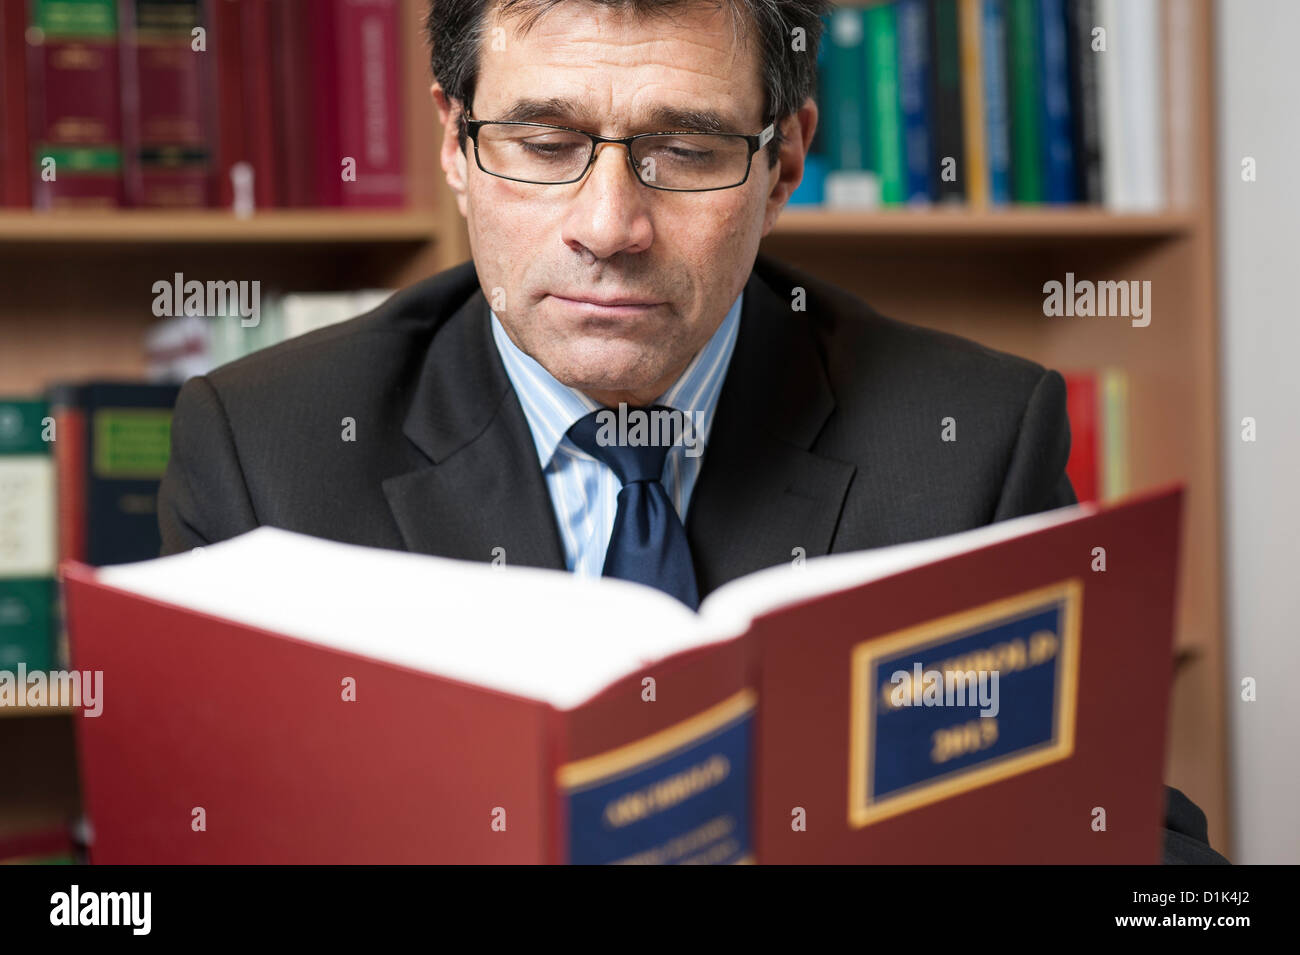 Ökologische Unternehmensportrait Anwalt, Rechtsanwalt, Rechtsanwalt Archbold 2013 Gesetz Buch in seinem Büro. Stockfoto